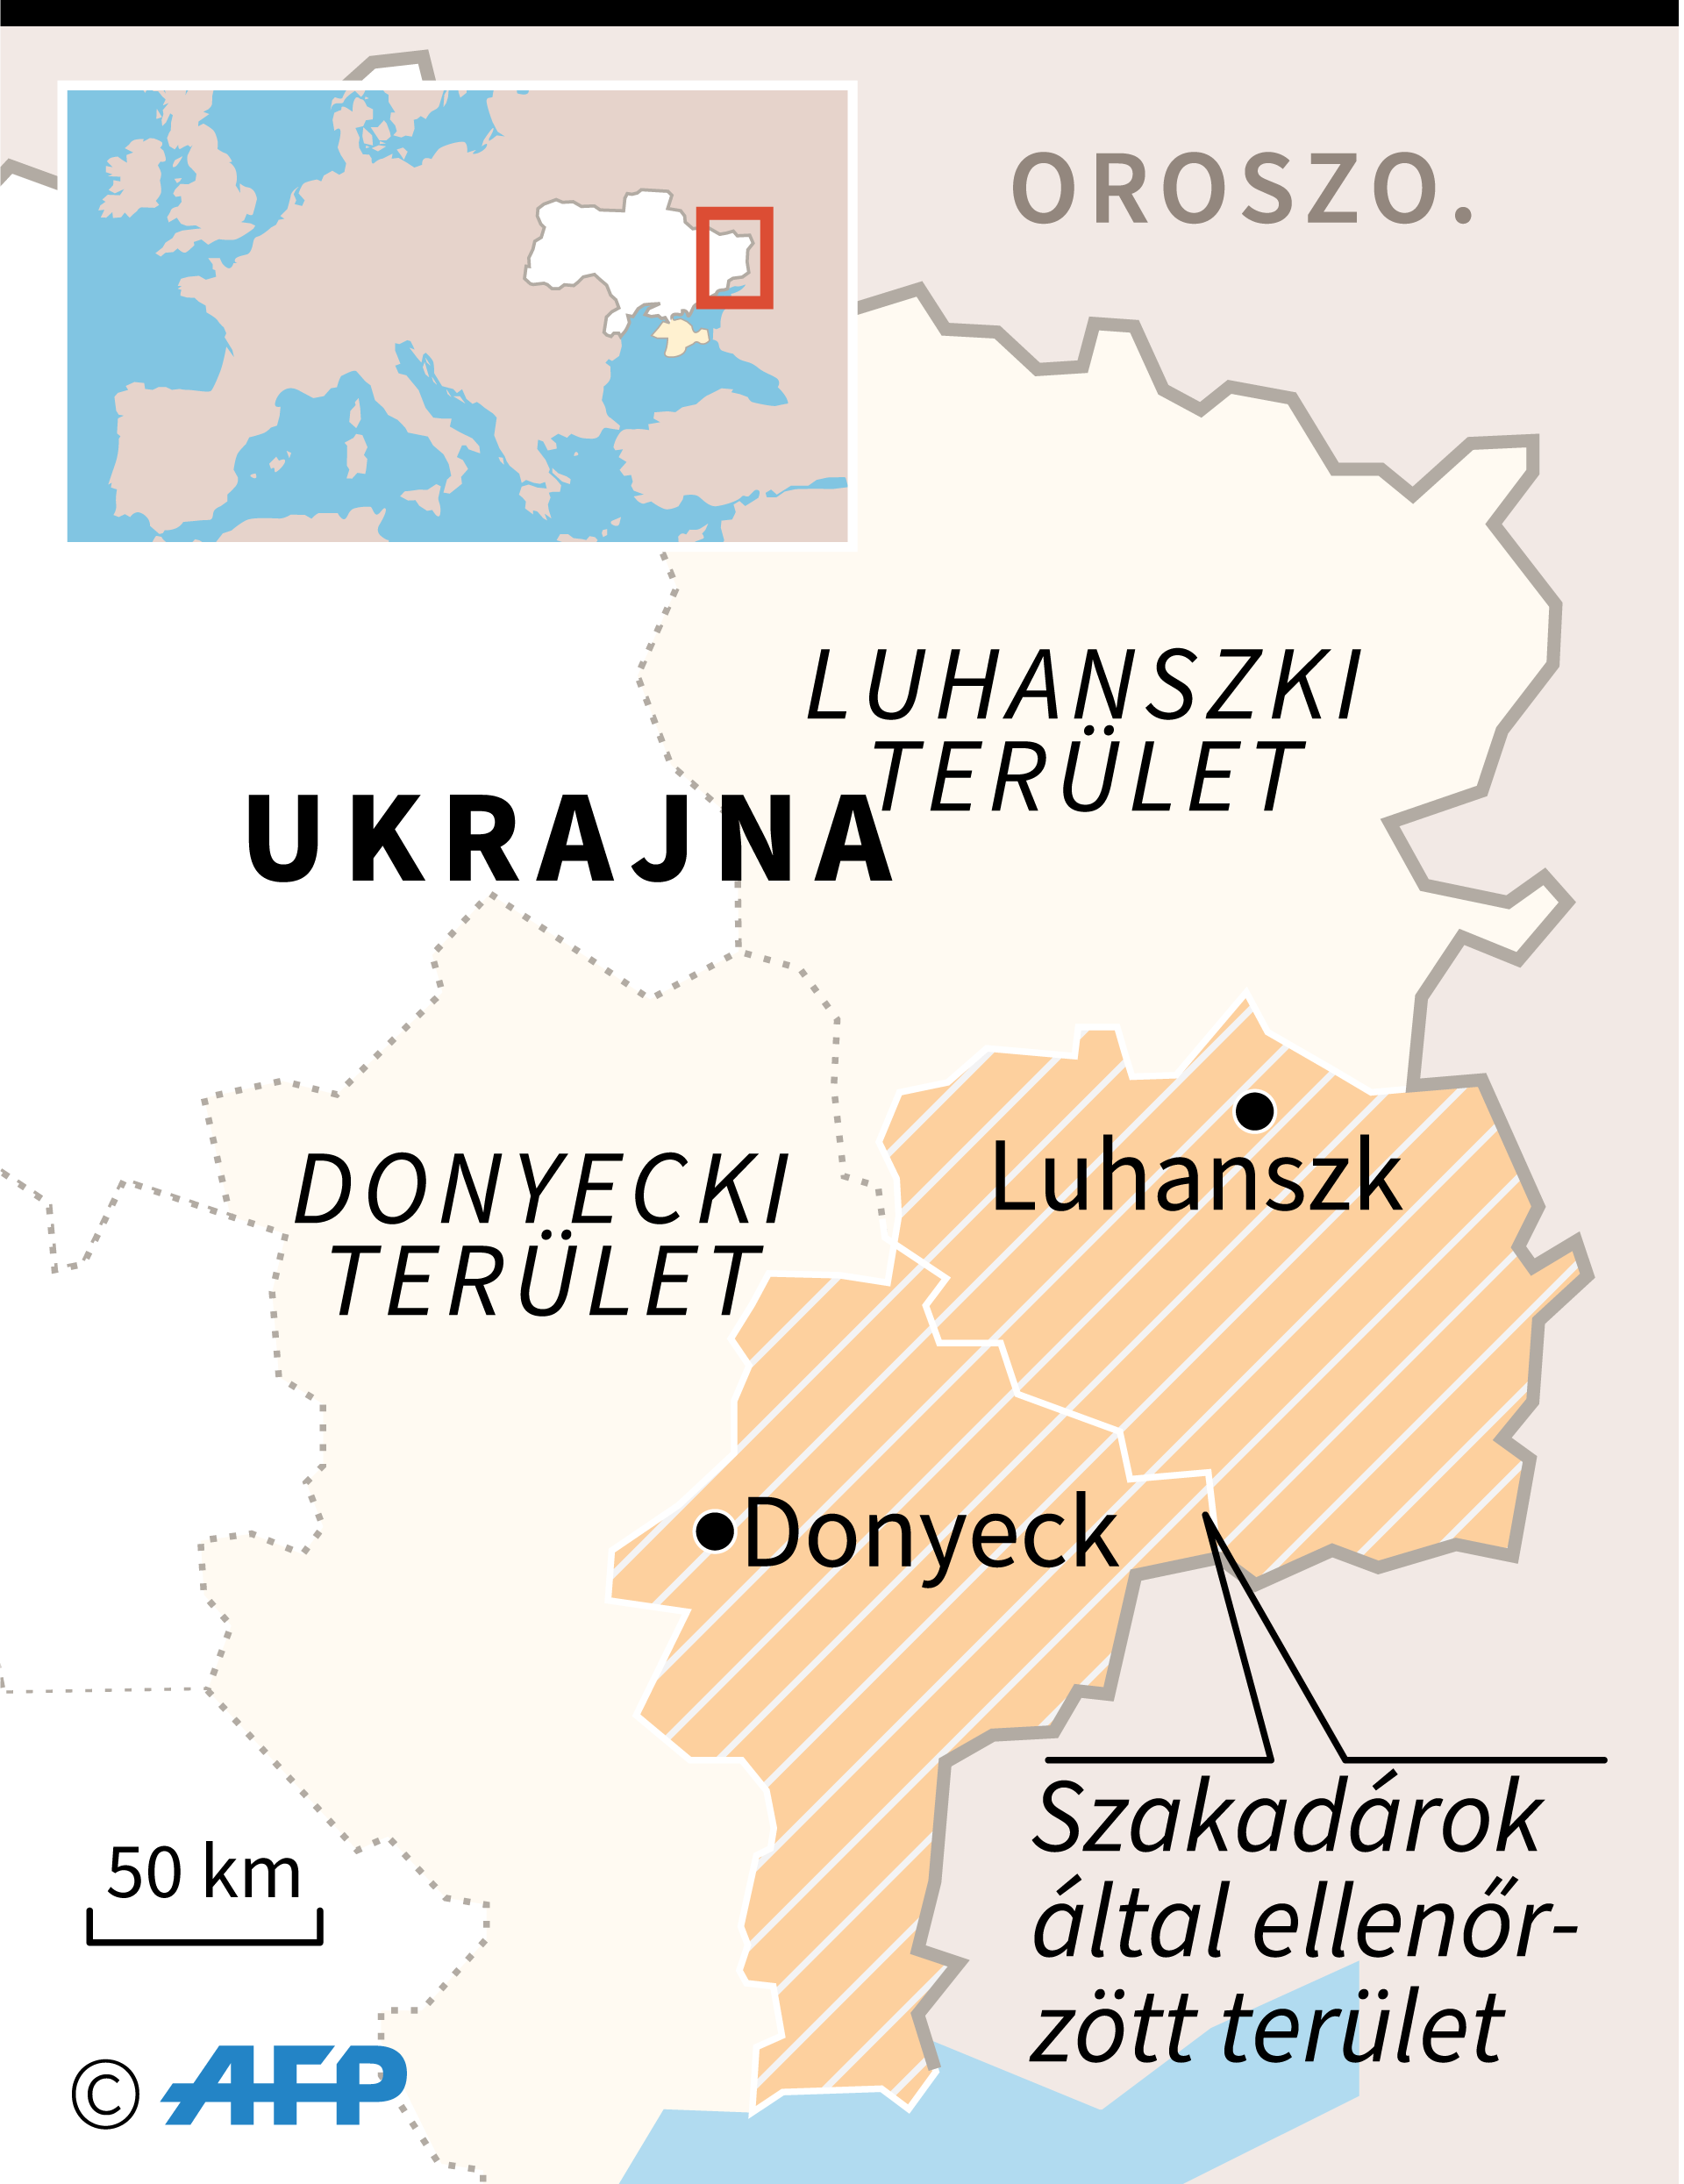 A luhanszki és a donyecki területek, és a szakadárok által ellenőrzött területek